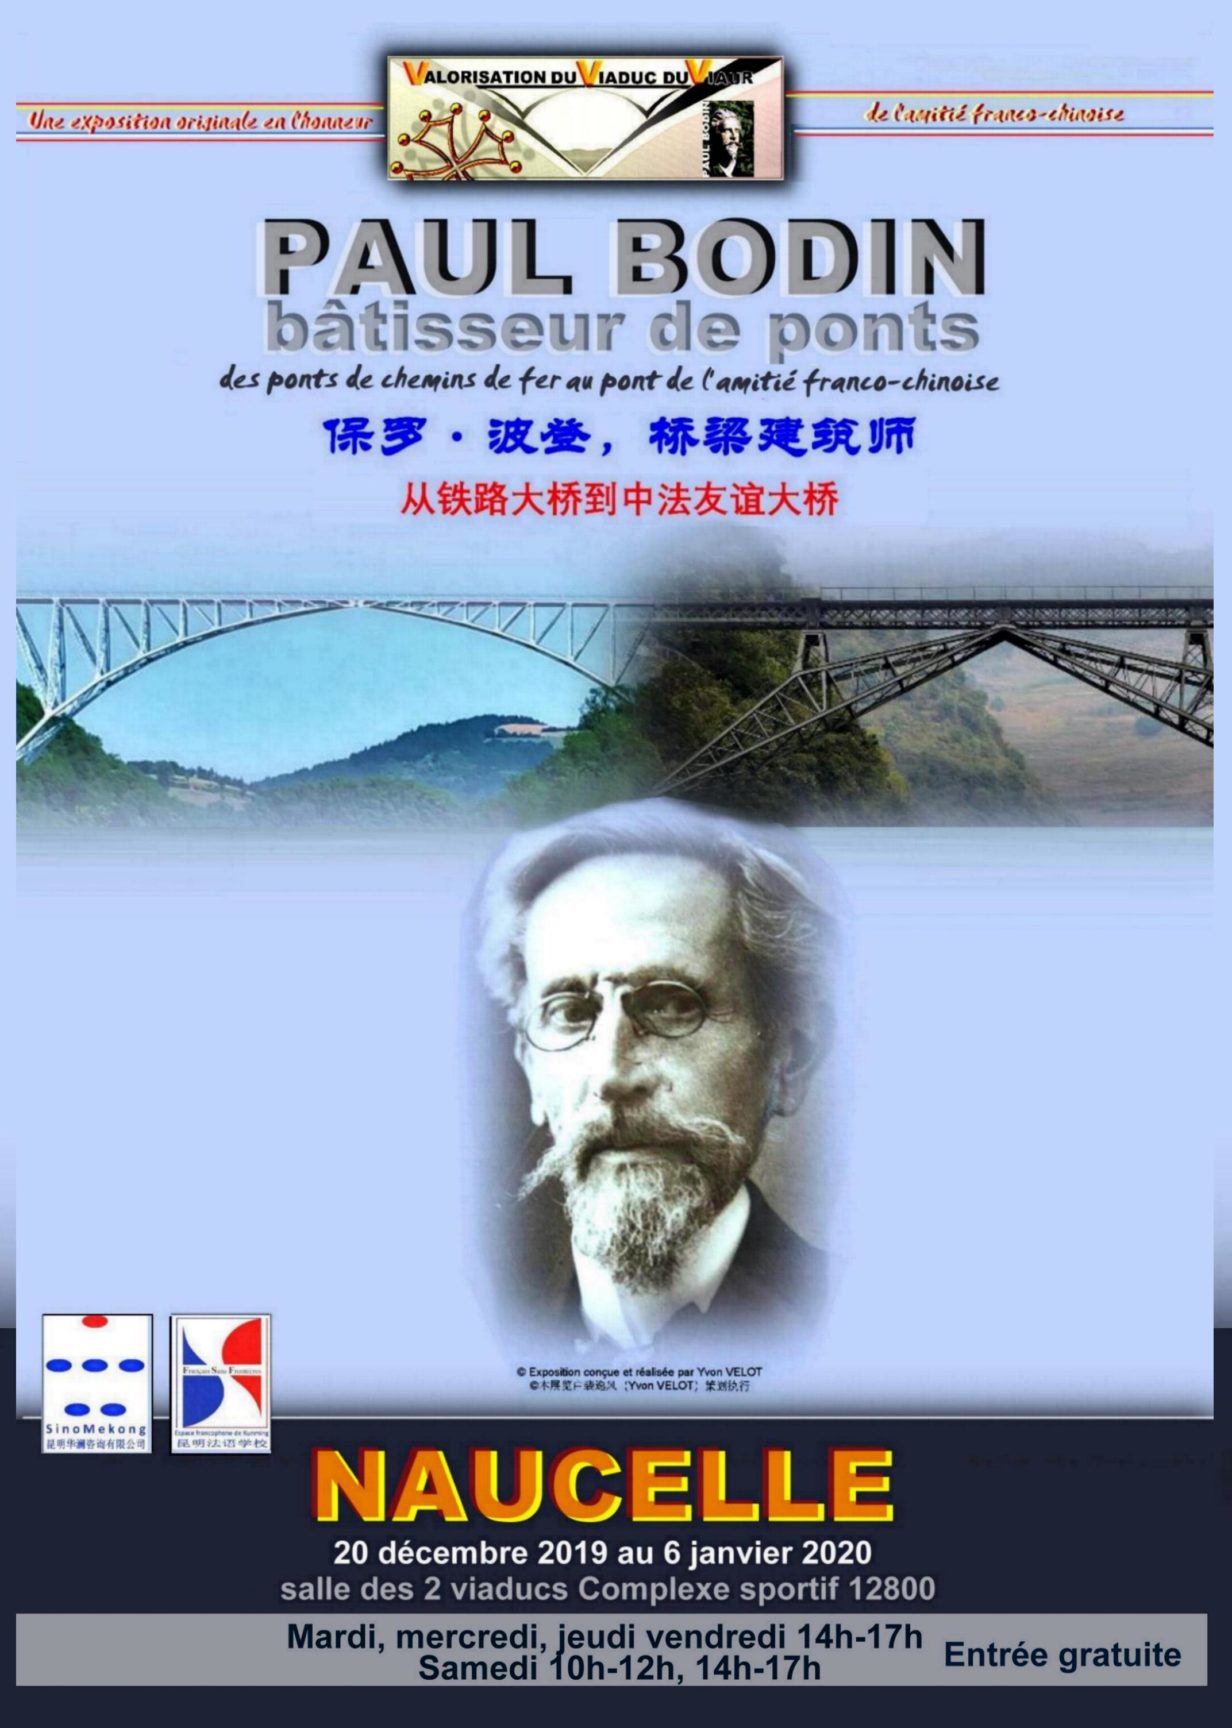 Exposition Paul BODIN Bâtisseuse de ponts se teint à Naucelle pour NOËL